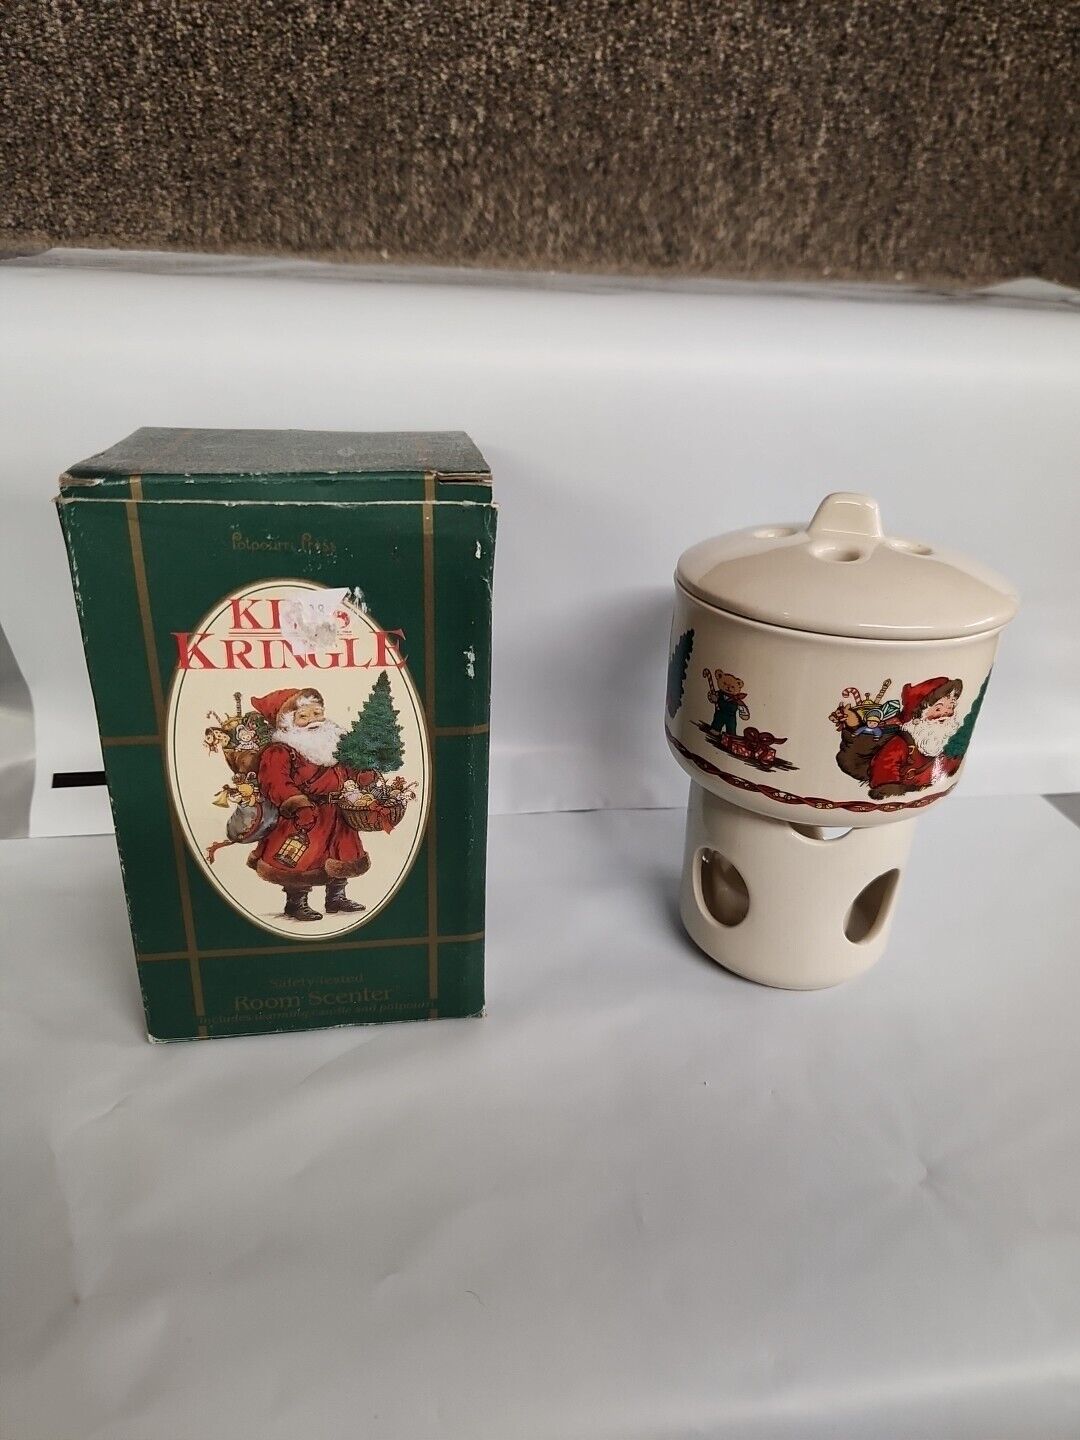 Vintage Potpourri Press Ceramic Room Scenter Santa Christmas Warmer Kris Kringle